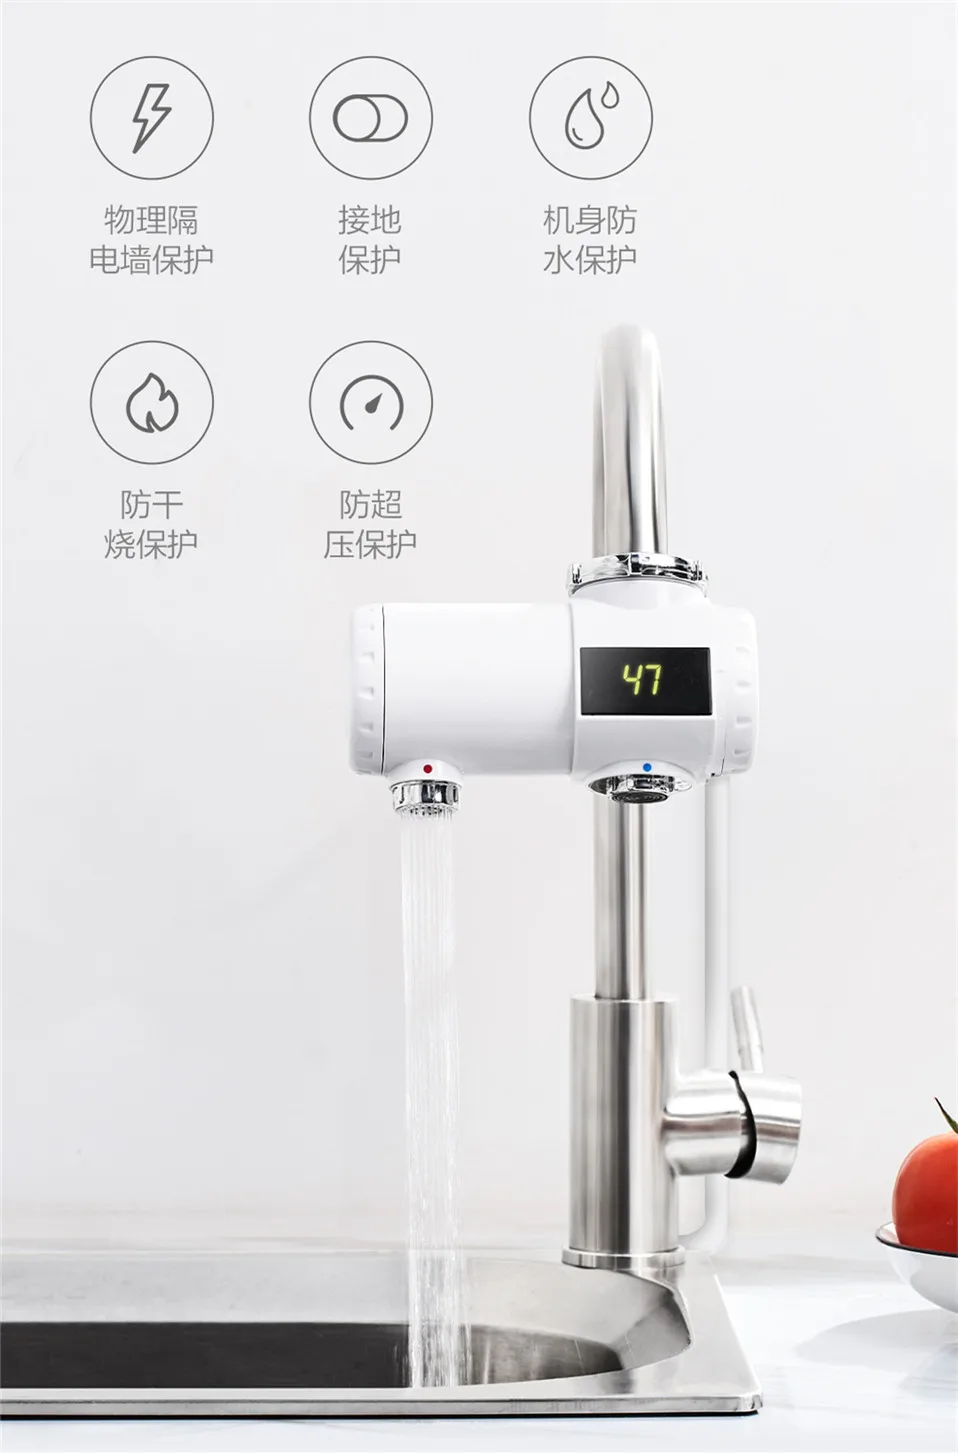 Xiaomi Xiaoda мгновенный кран легко установить 5 Защита IPX4 водонепроницаемый рейтинг 3 секунды горячая вода 30 до 50 градусов Цельсия